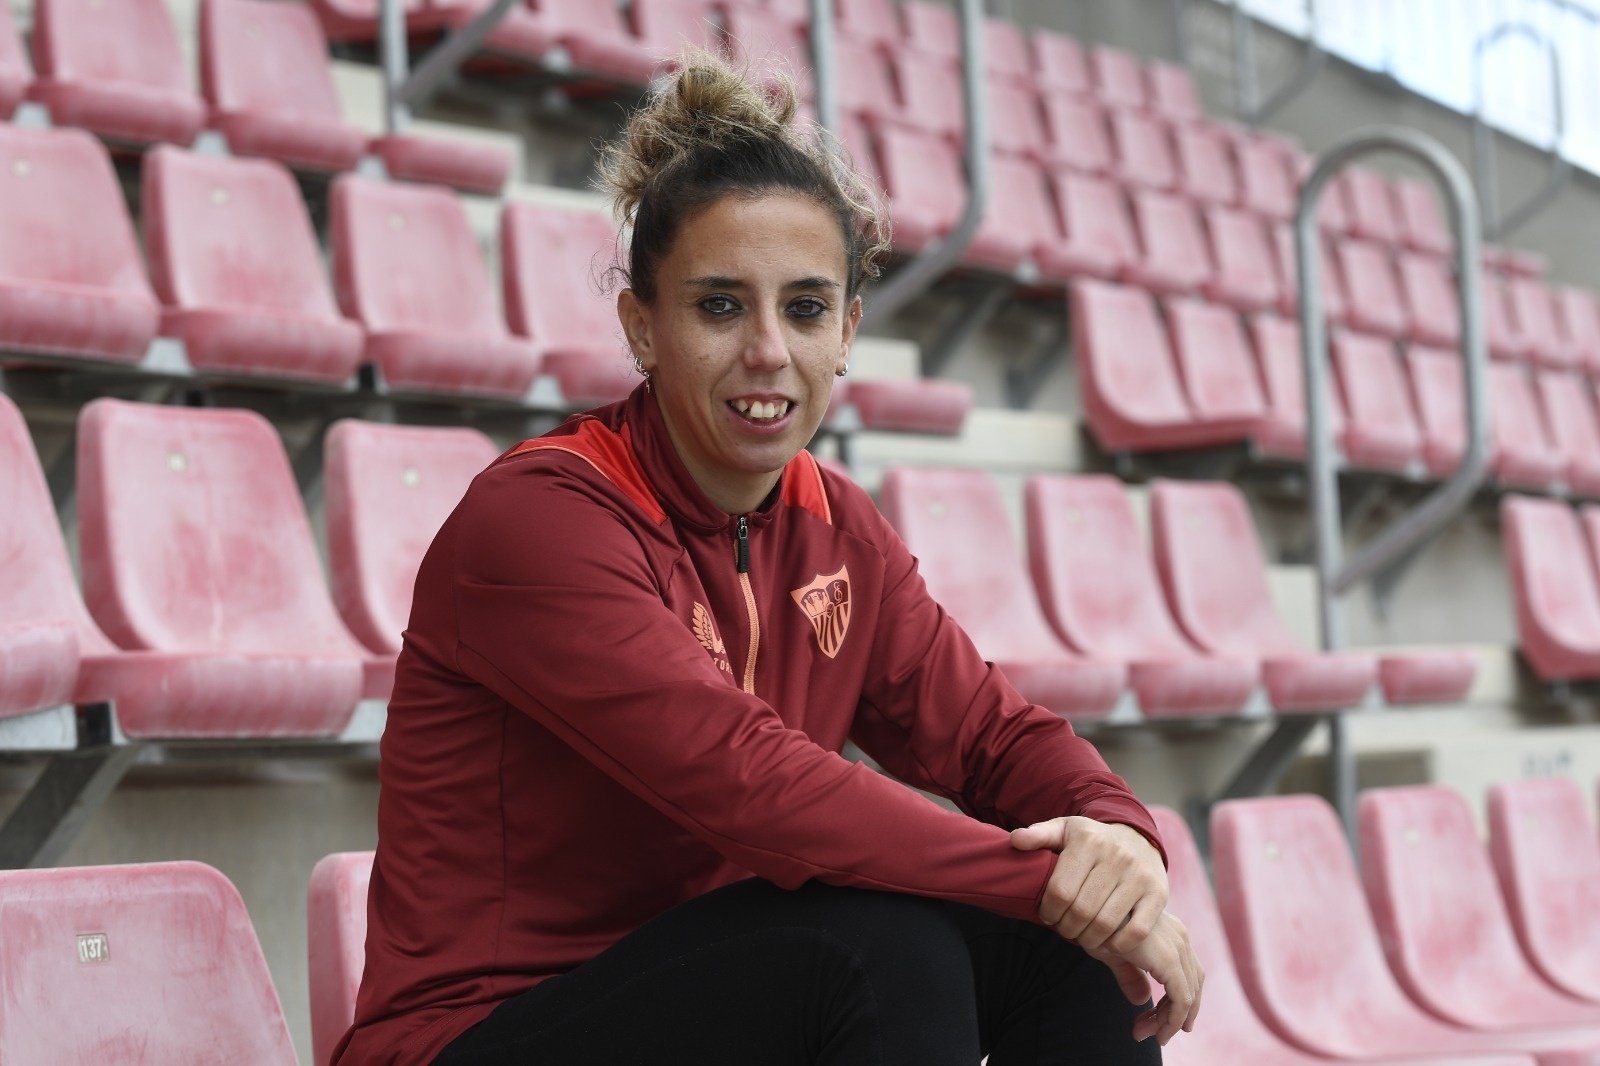 La jugadora del Sevilla FC Femenino, Nagore Calderón, en las gradas del Ramón Sánchez-Pizjuán. Foto: SFC Media